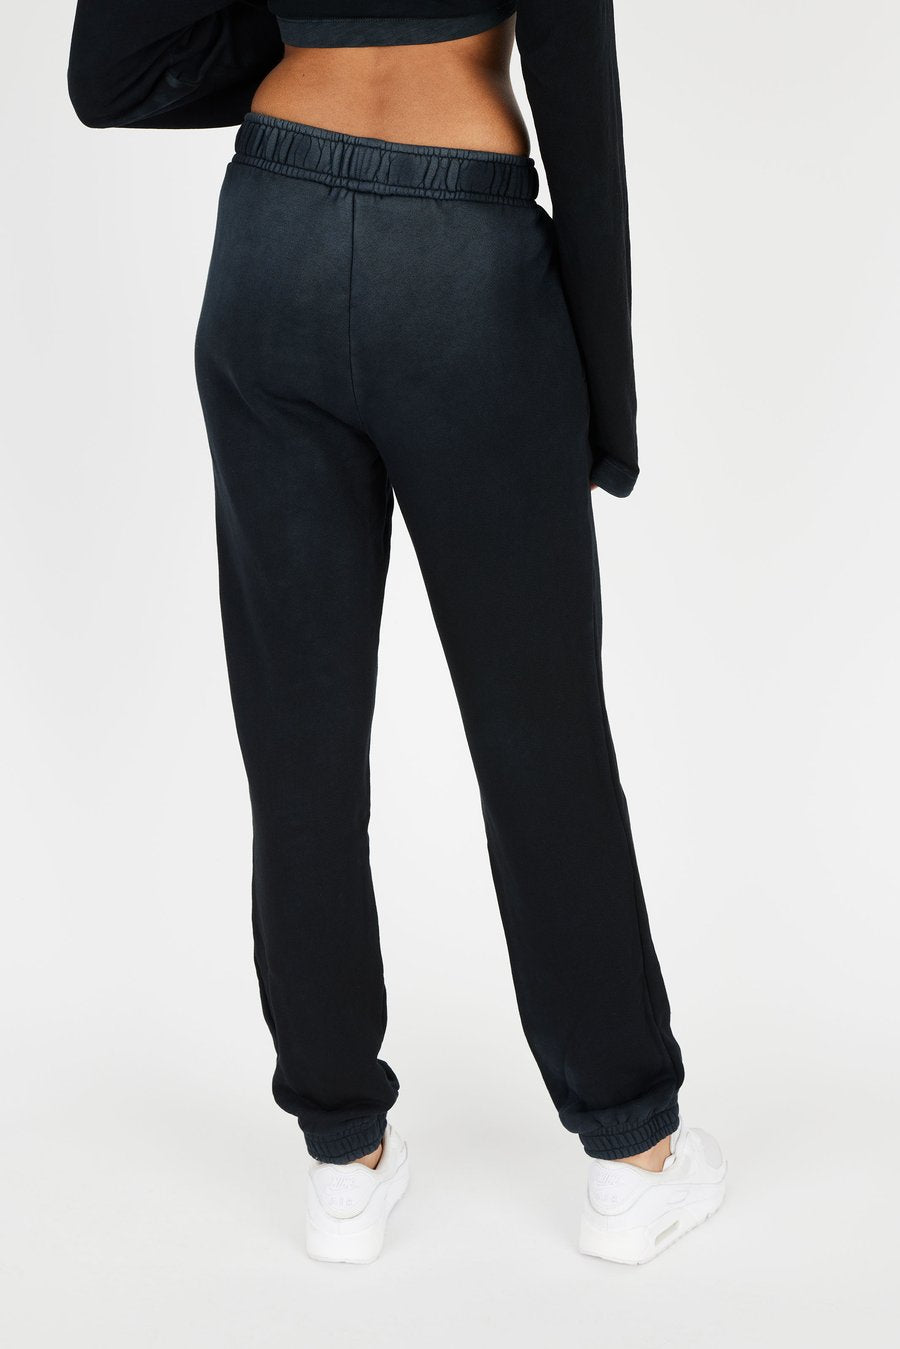 Cotton Citizen Brooklyn Sweatpants Vintage Black | 4sisters1closet